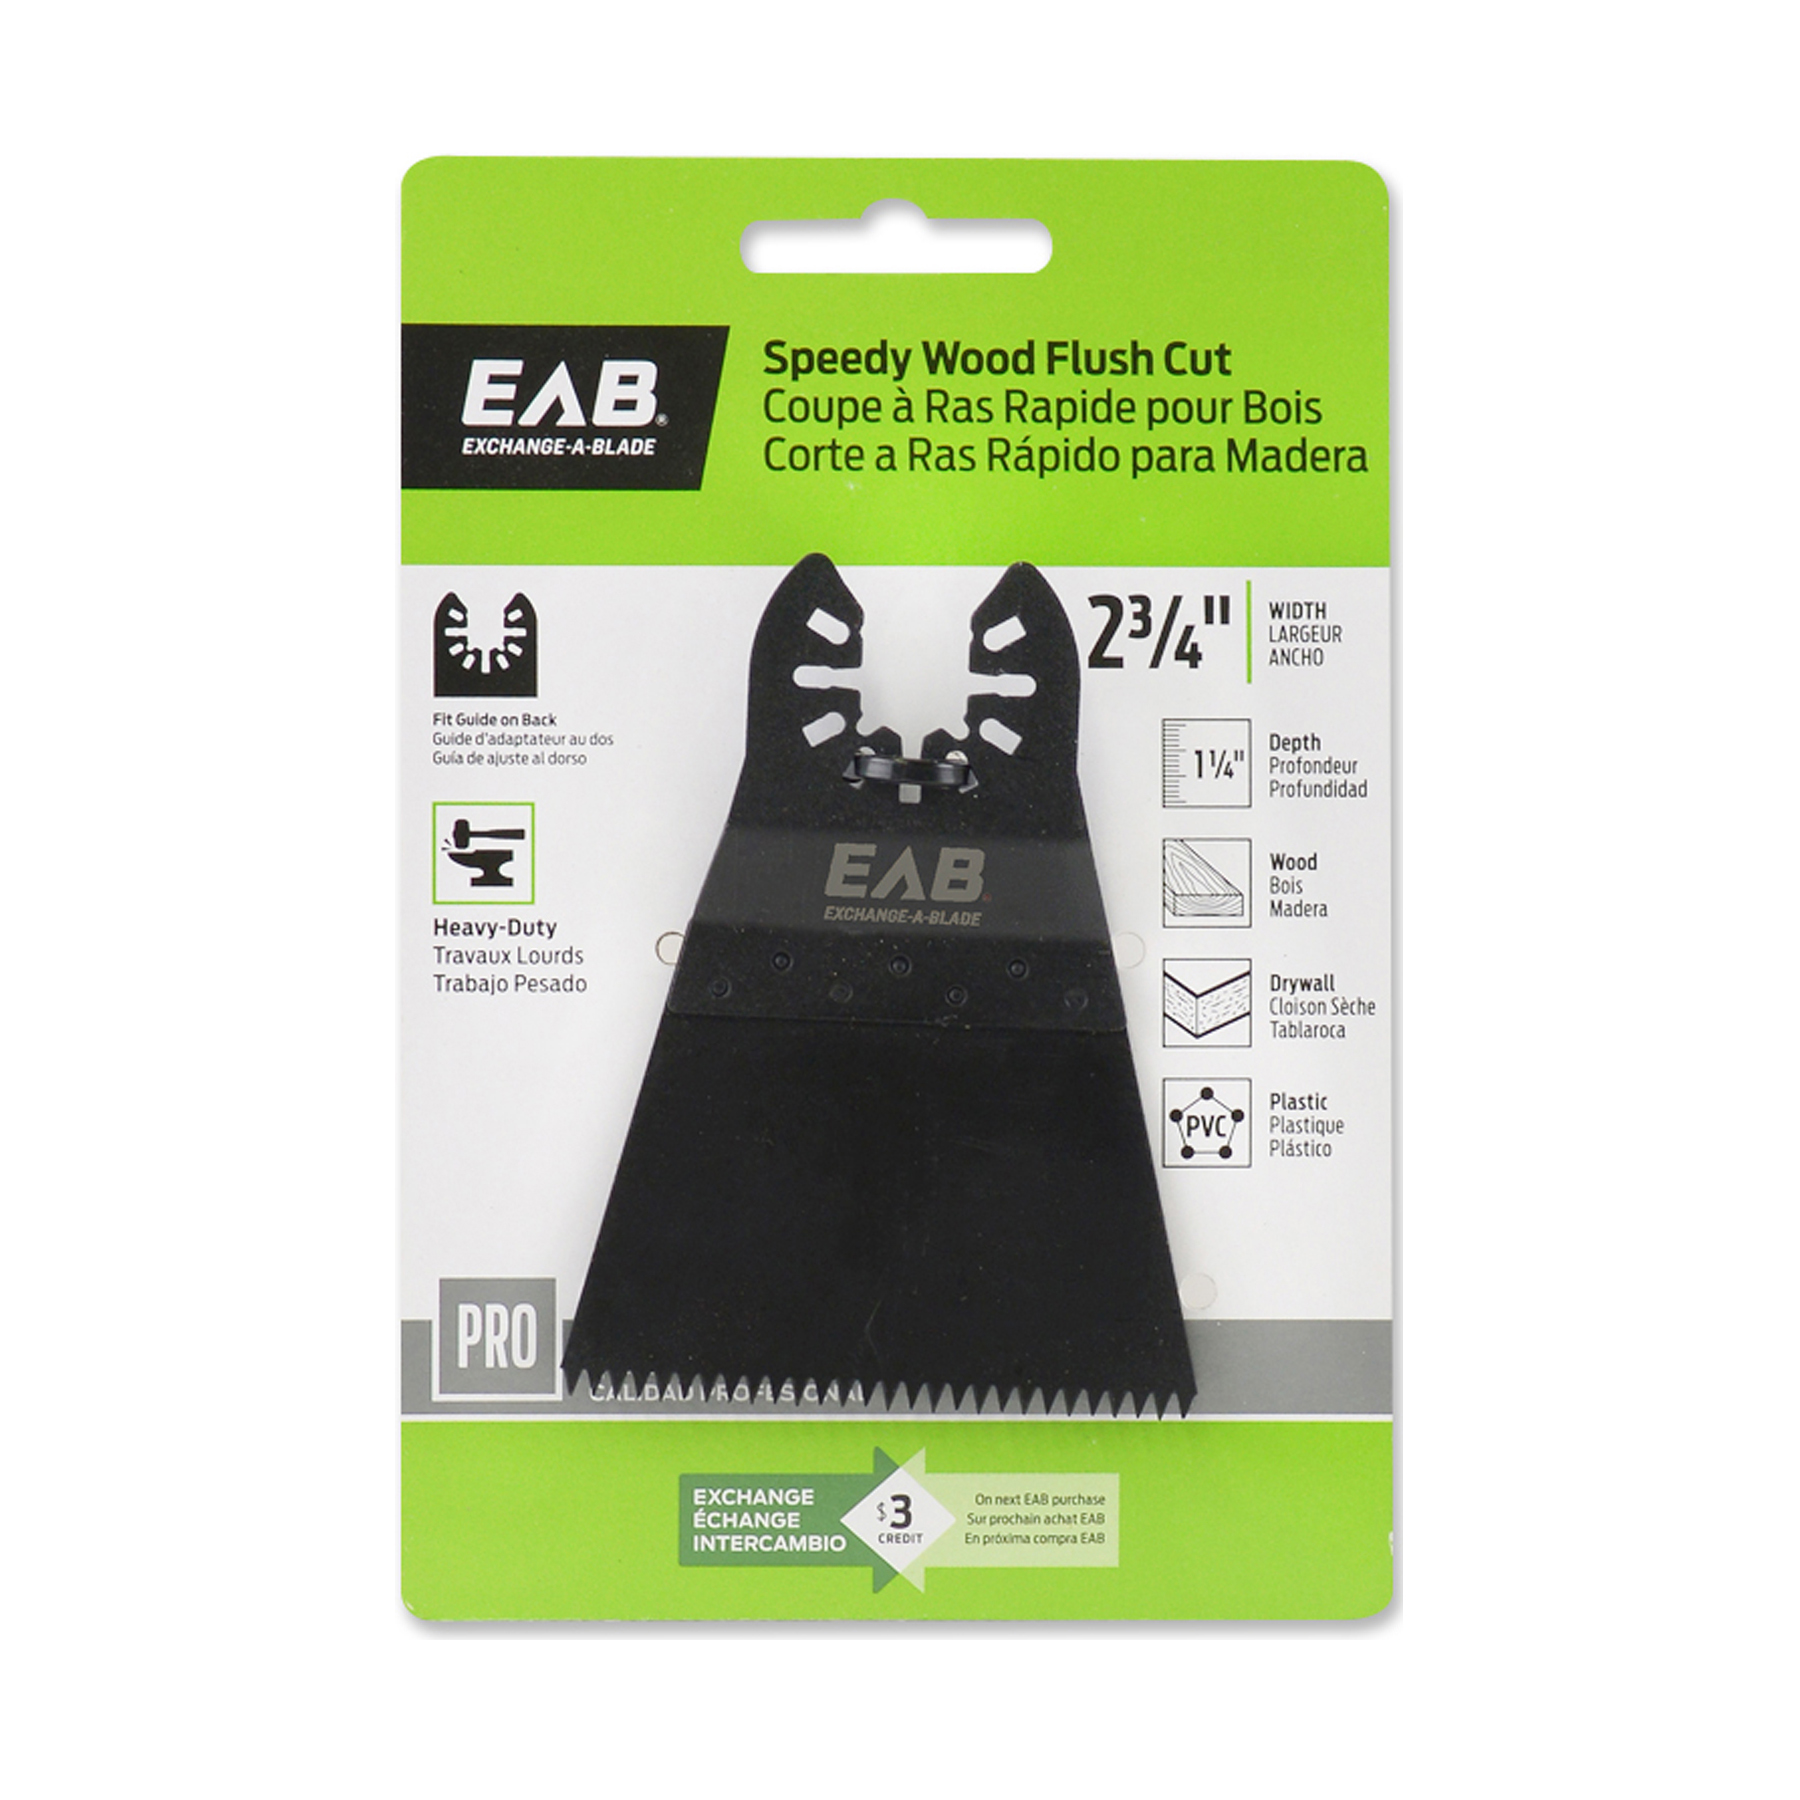 EAB (1070252) packaging